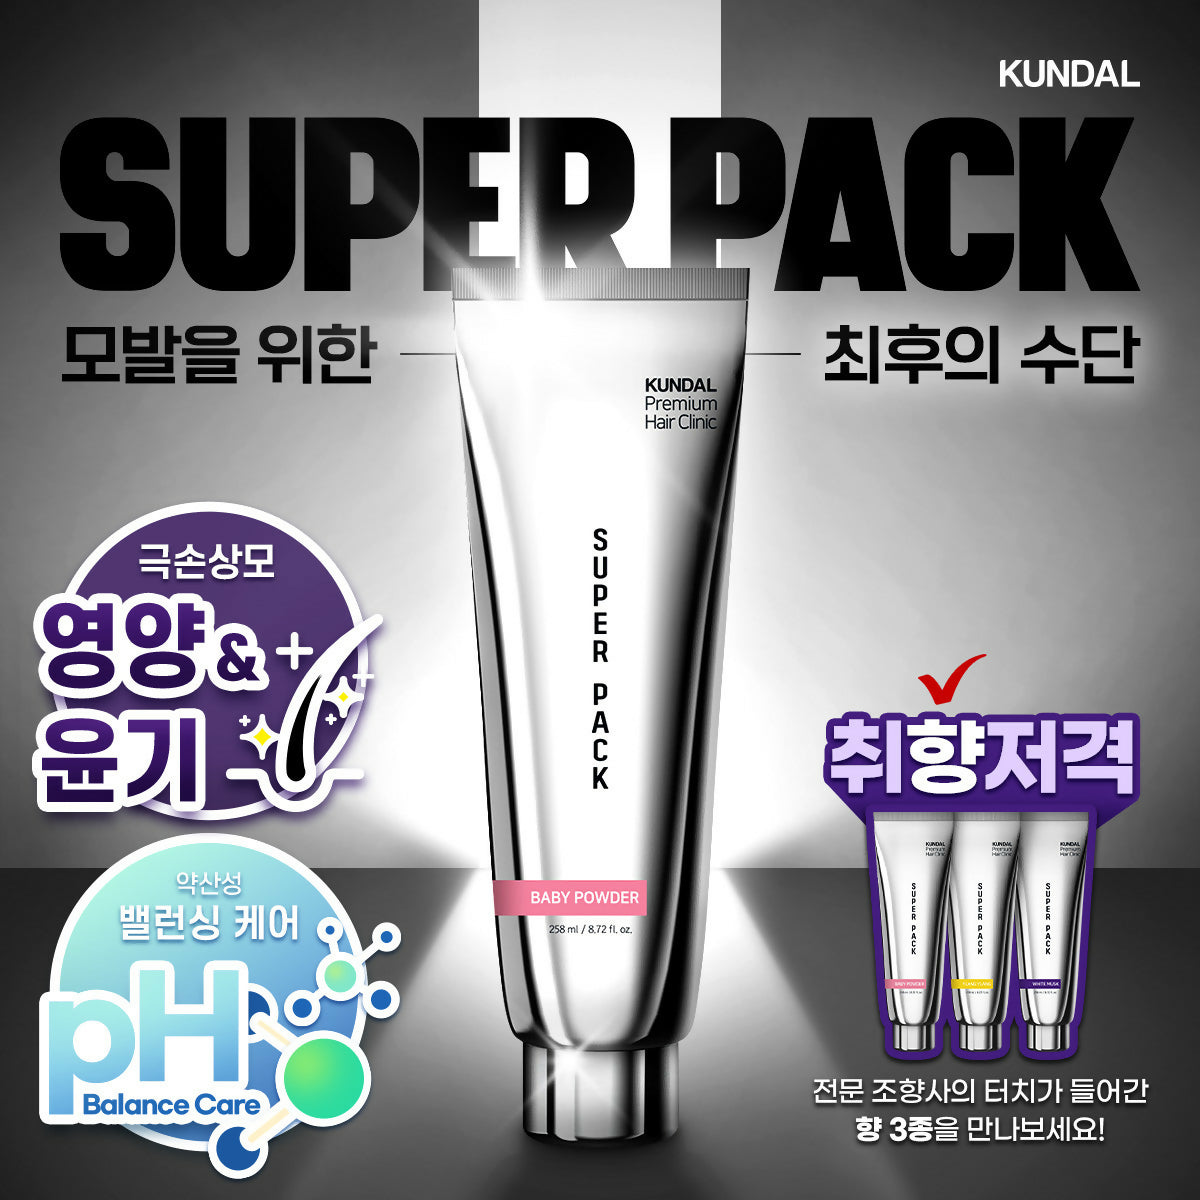 KUNDAL_Super pack-Thumbnail